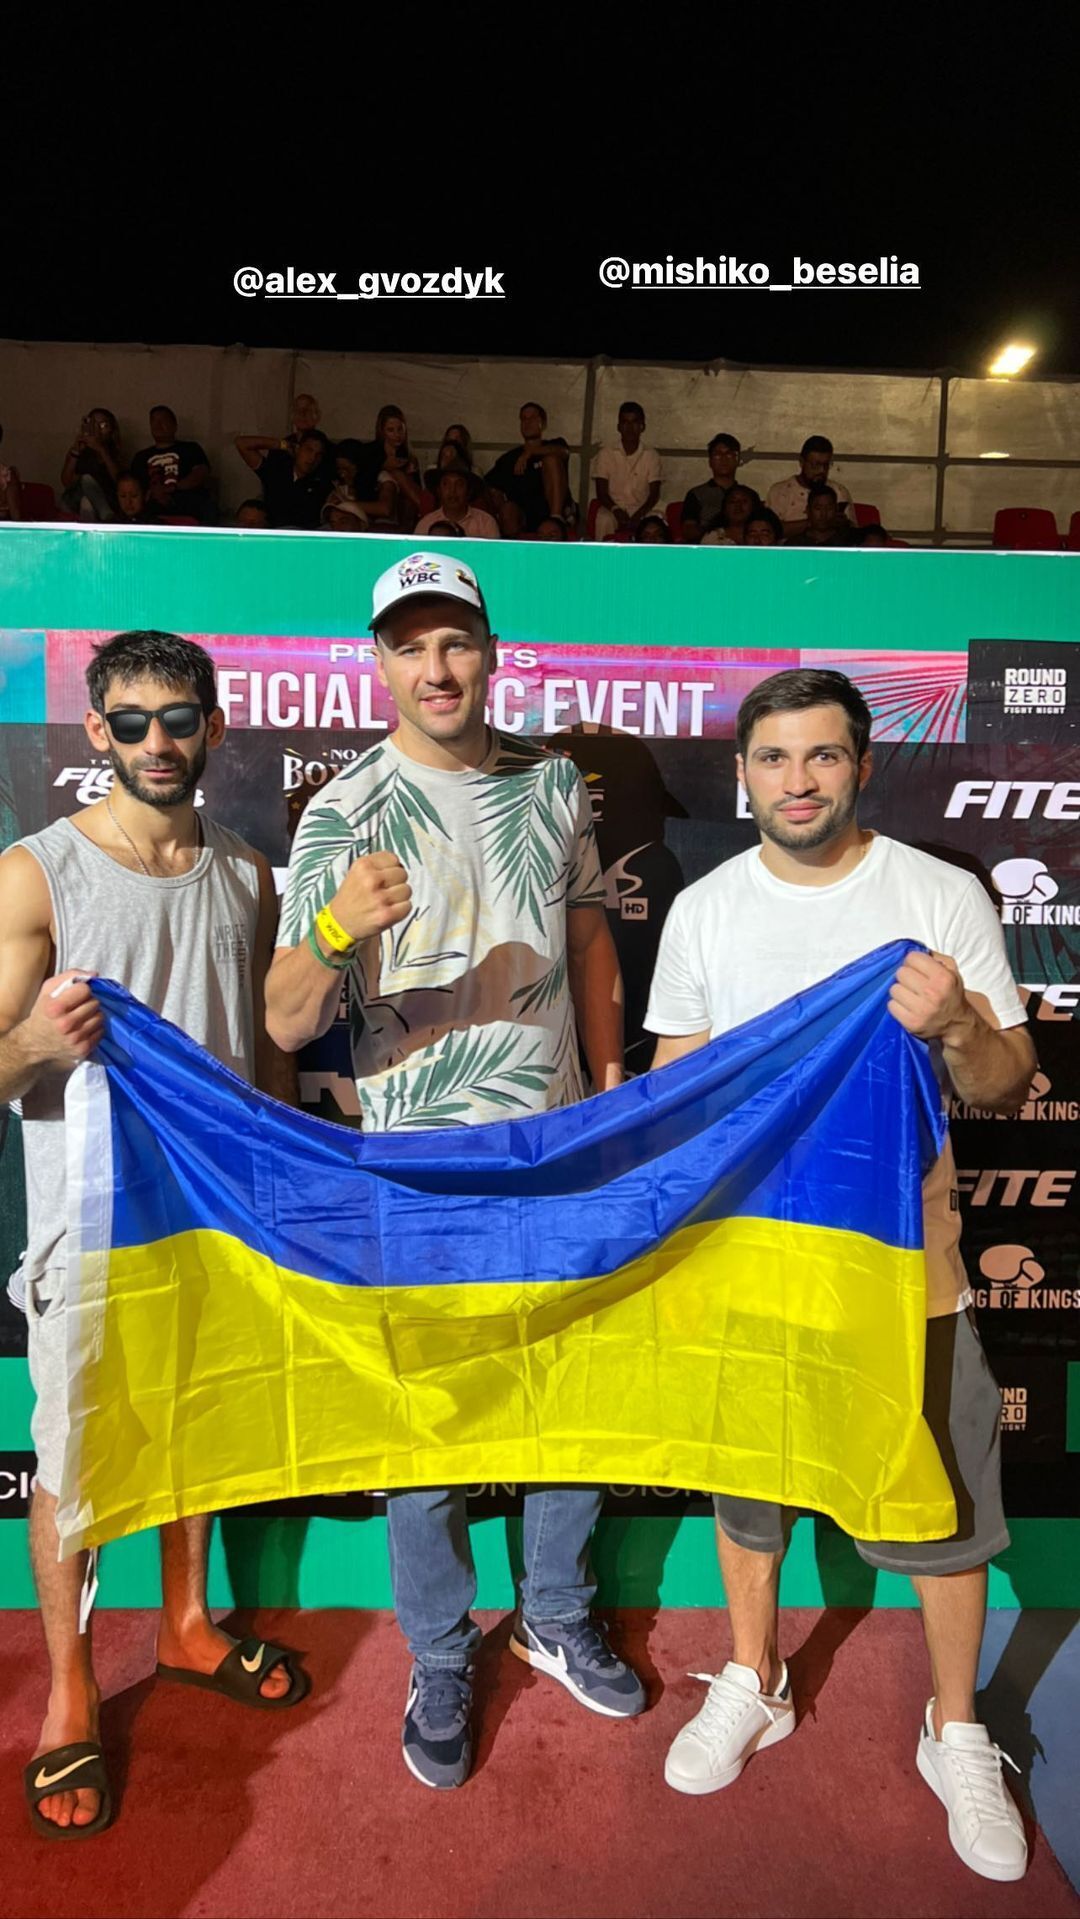 Український боксер виграв нокаутом бій у Мексиці. Фото і відео